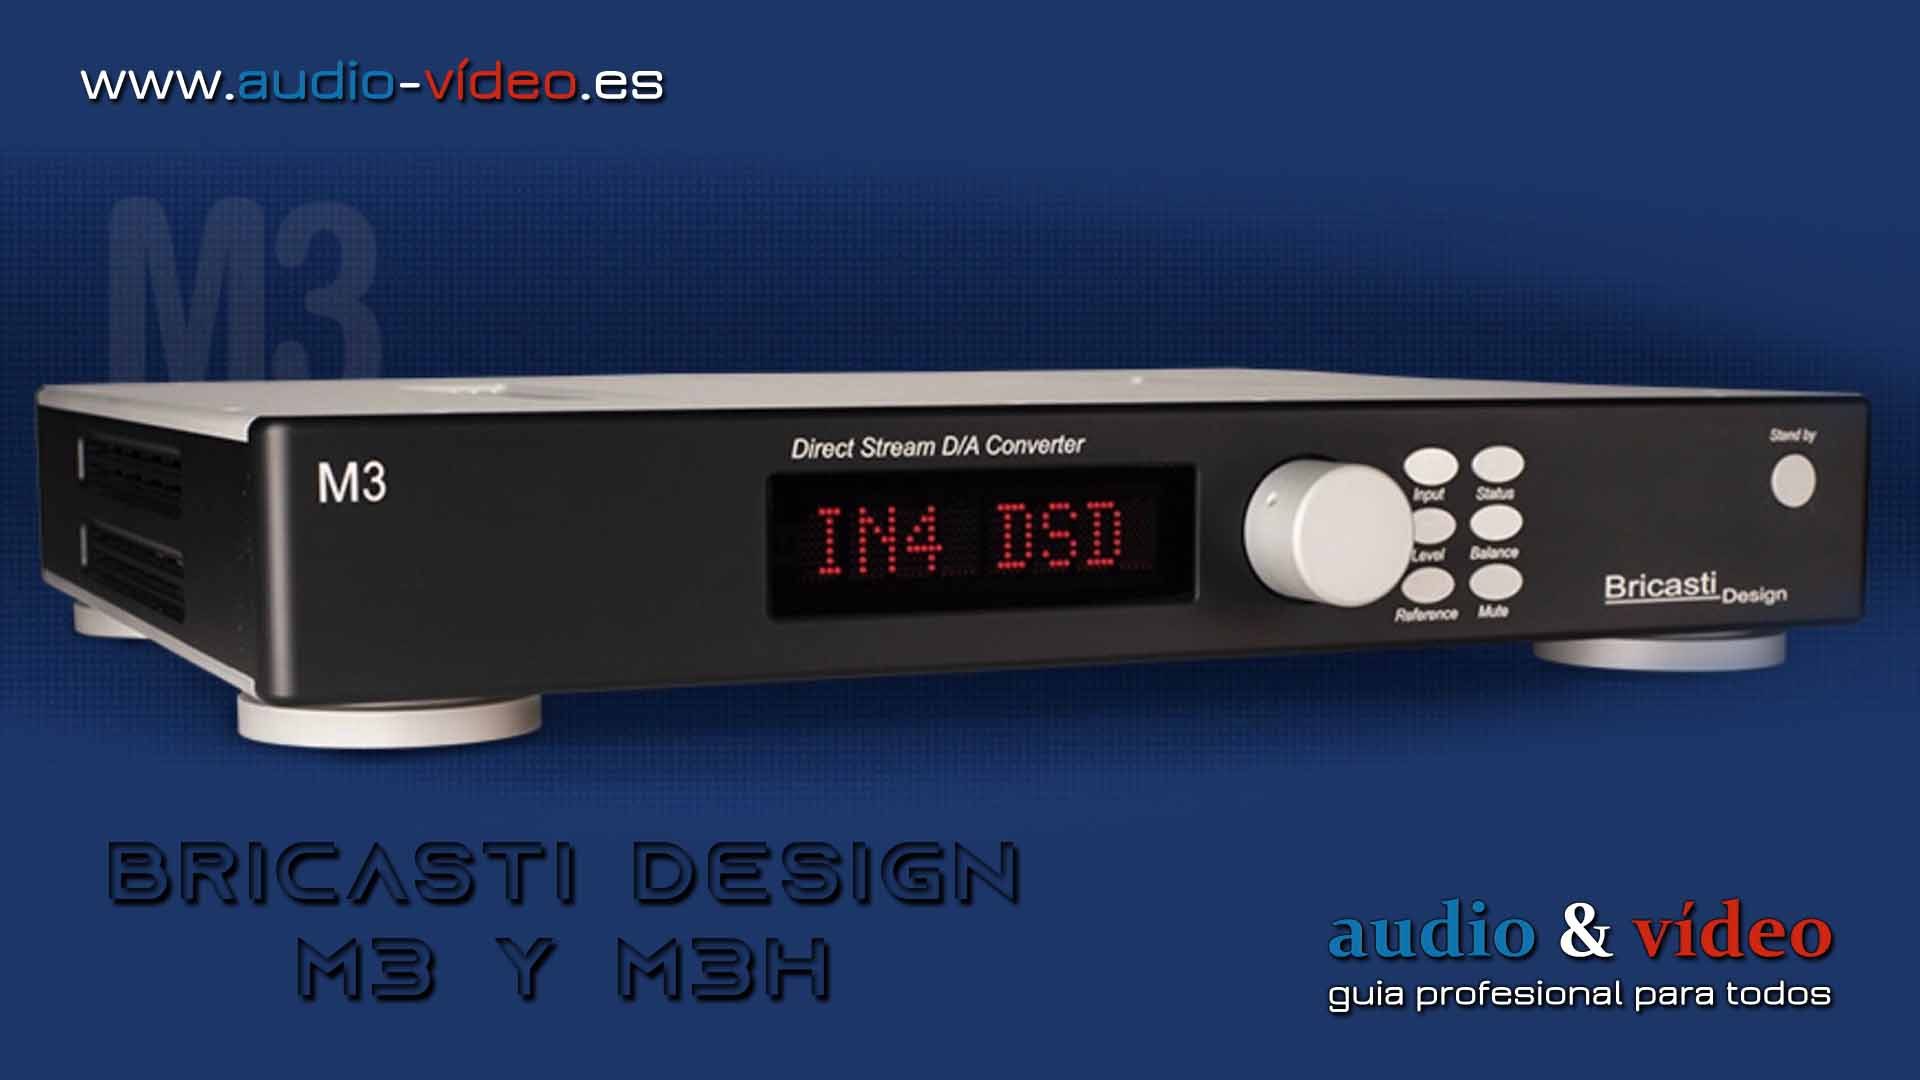 Bricasti Design M3 y M3H el primer amplificador de auriculares / DAC compatible con DSD 11.2MHz